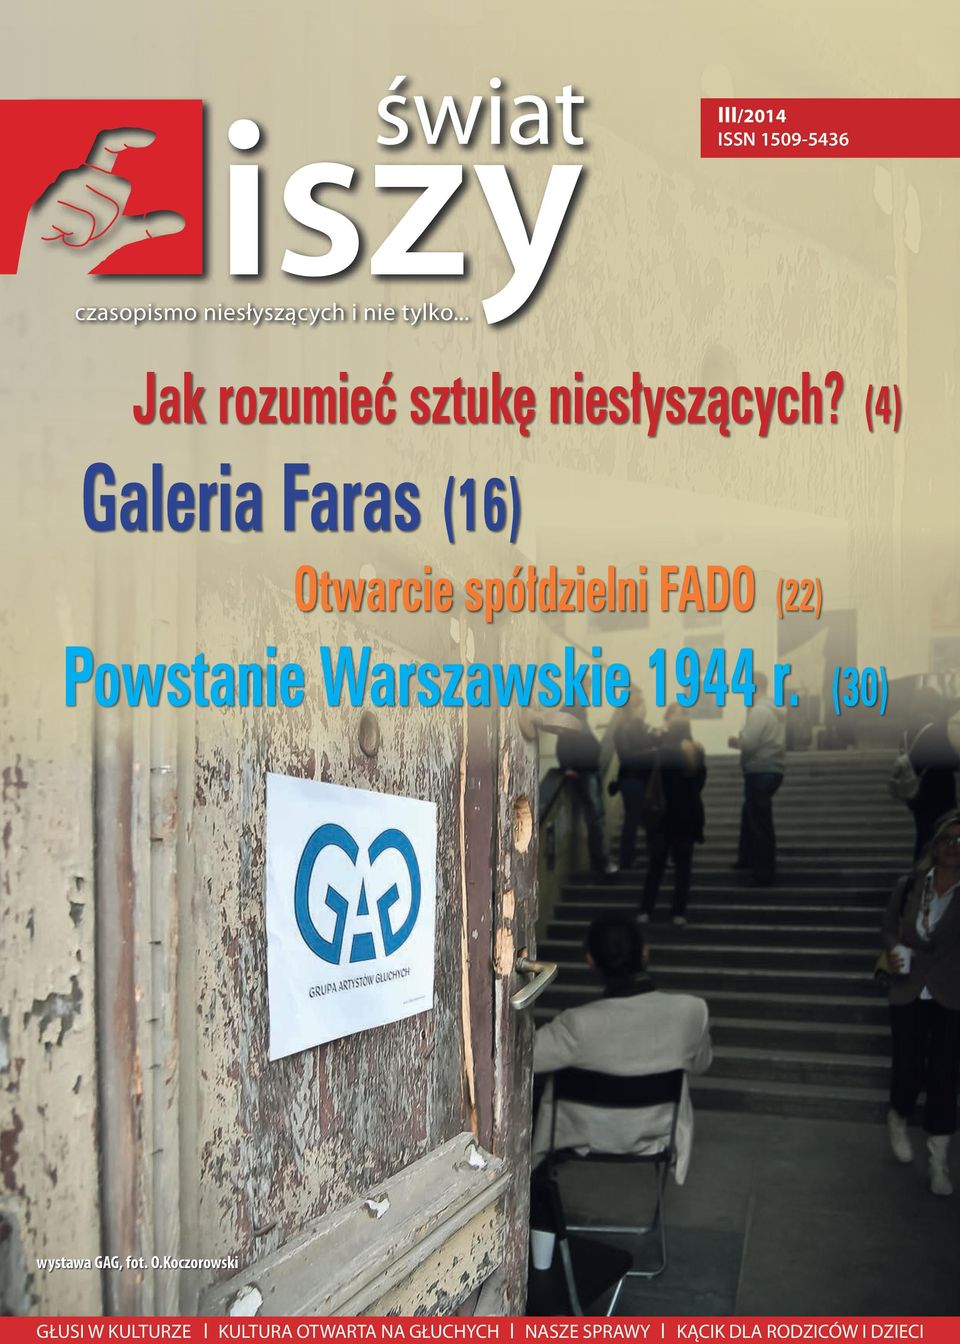 (4) Galeria Faras (16) Otwarcie spółdzielni FADO (22) Powstanie Warszawskie